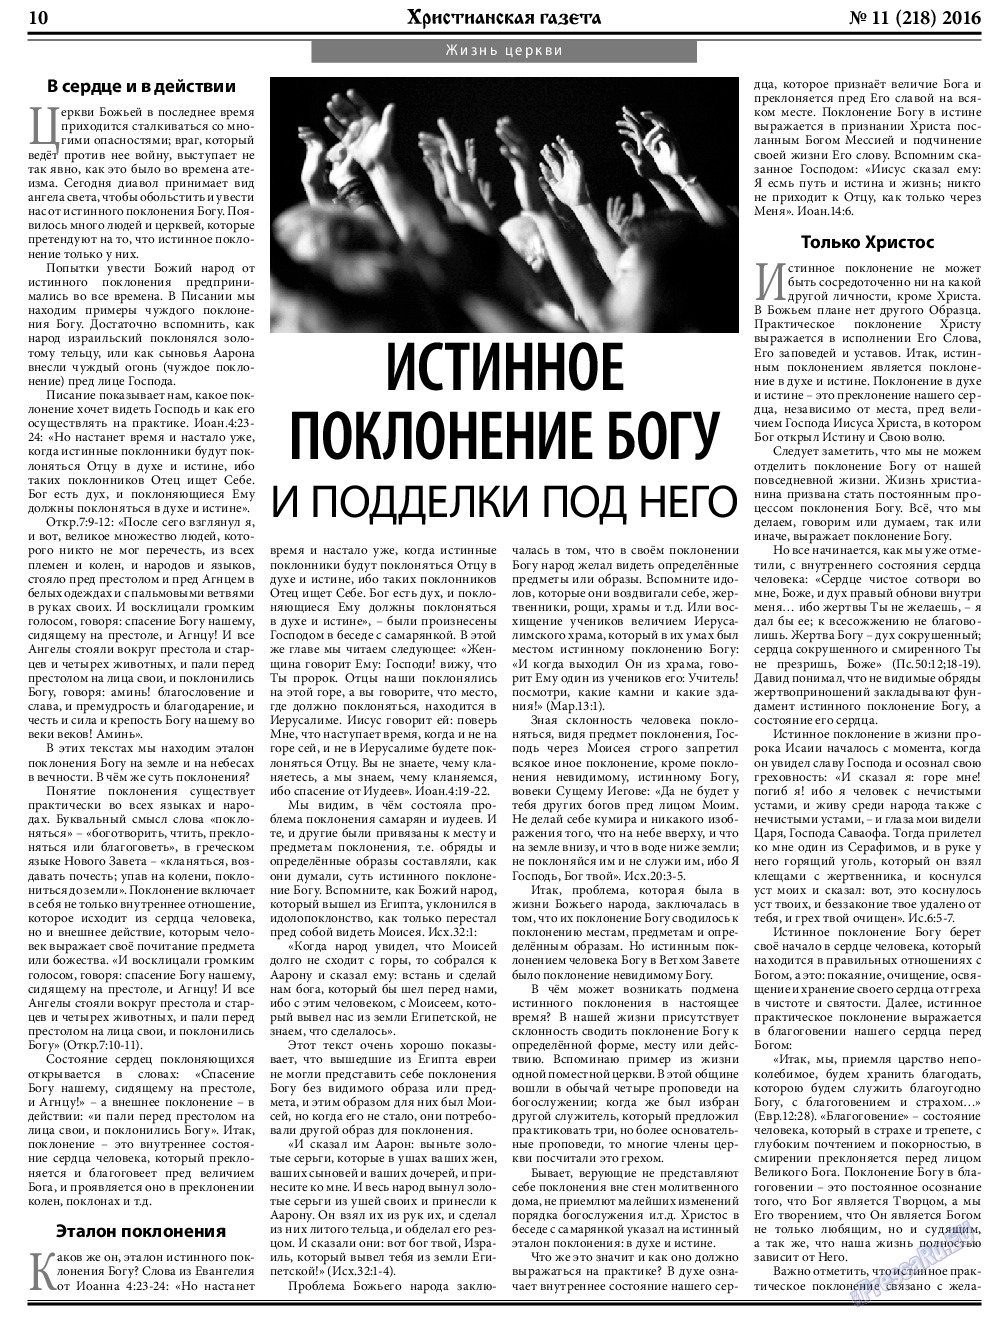 Христианская газета, газета. 2016 №11 стр.10